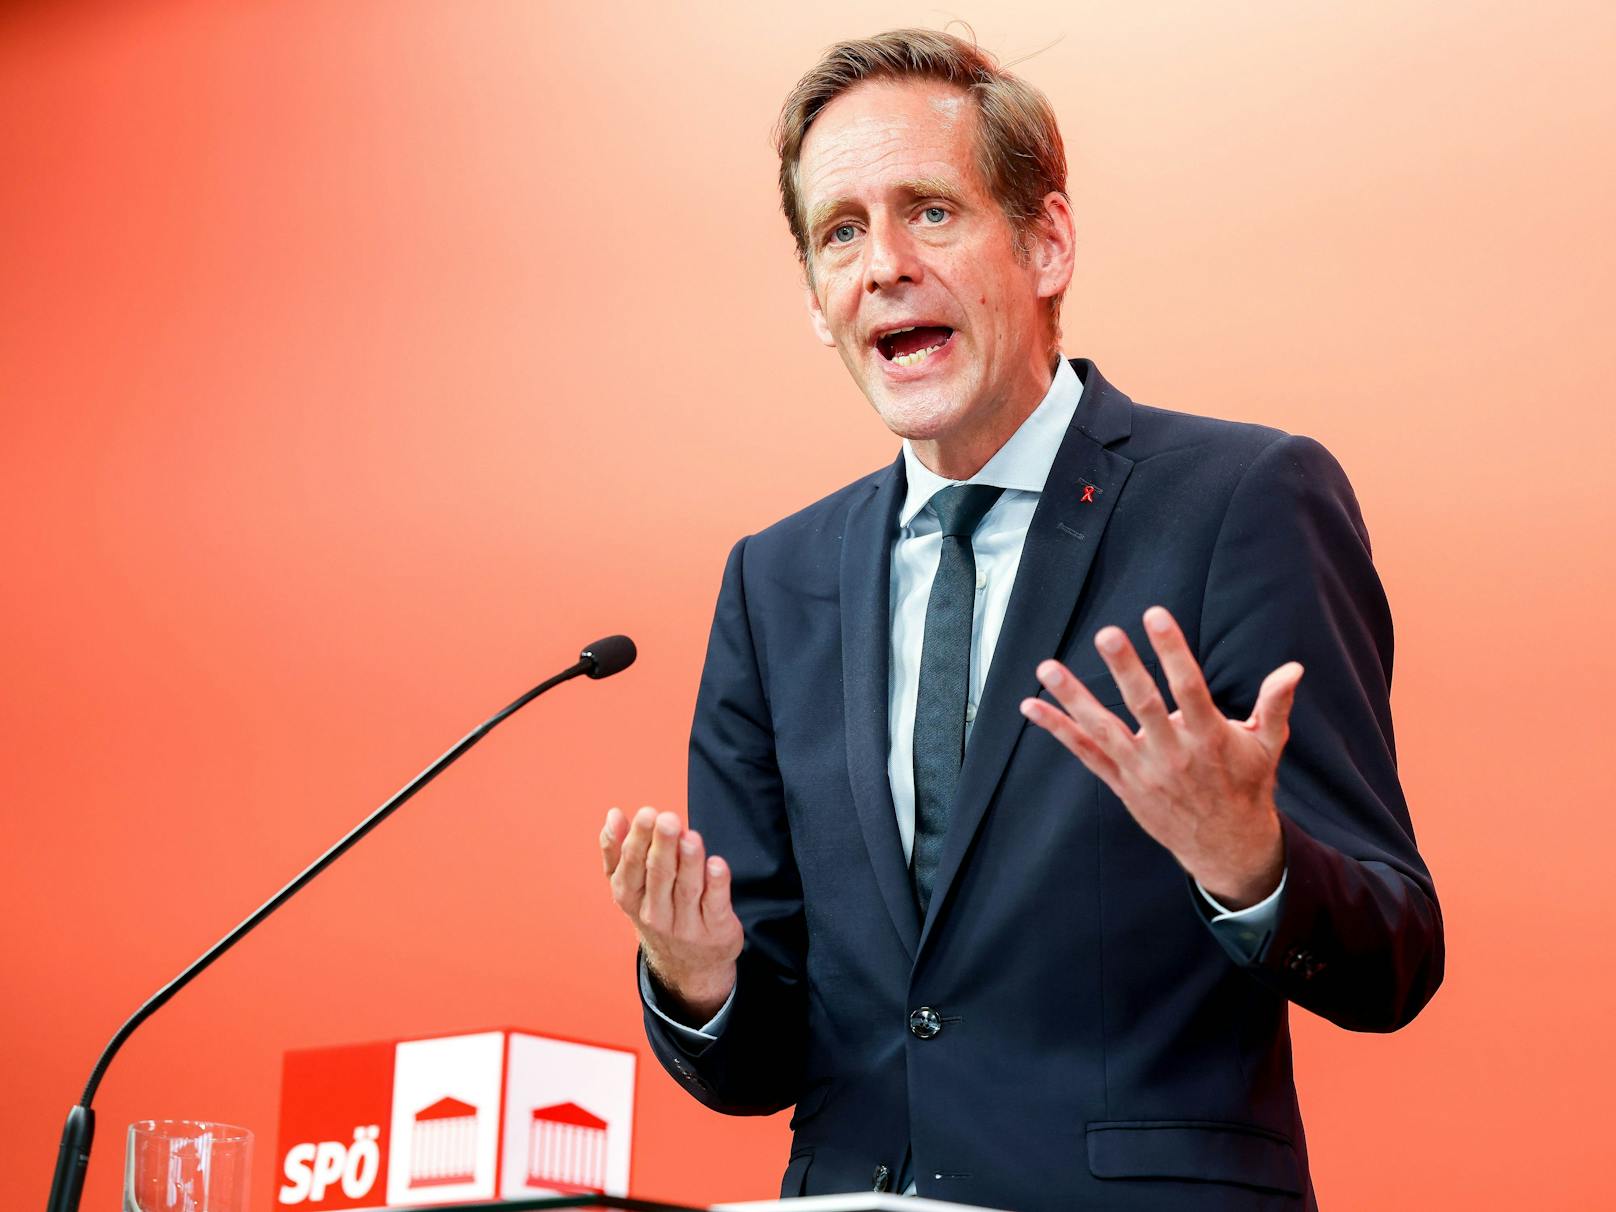 "Widerwärtig!" – SPÖ zieht Bilanz zu Ibiza-U-Ausschuss